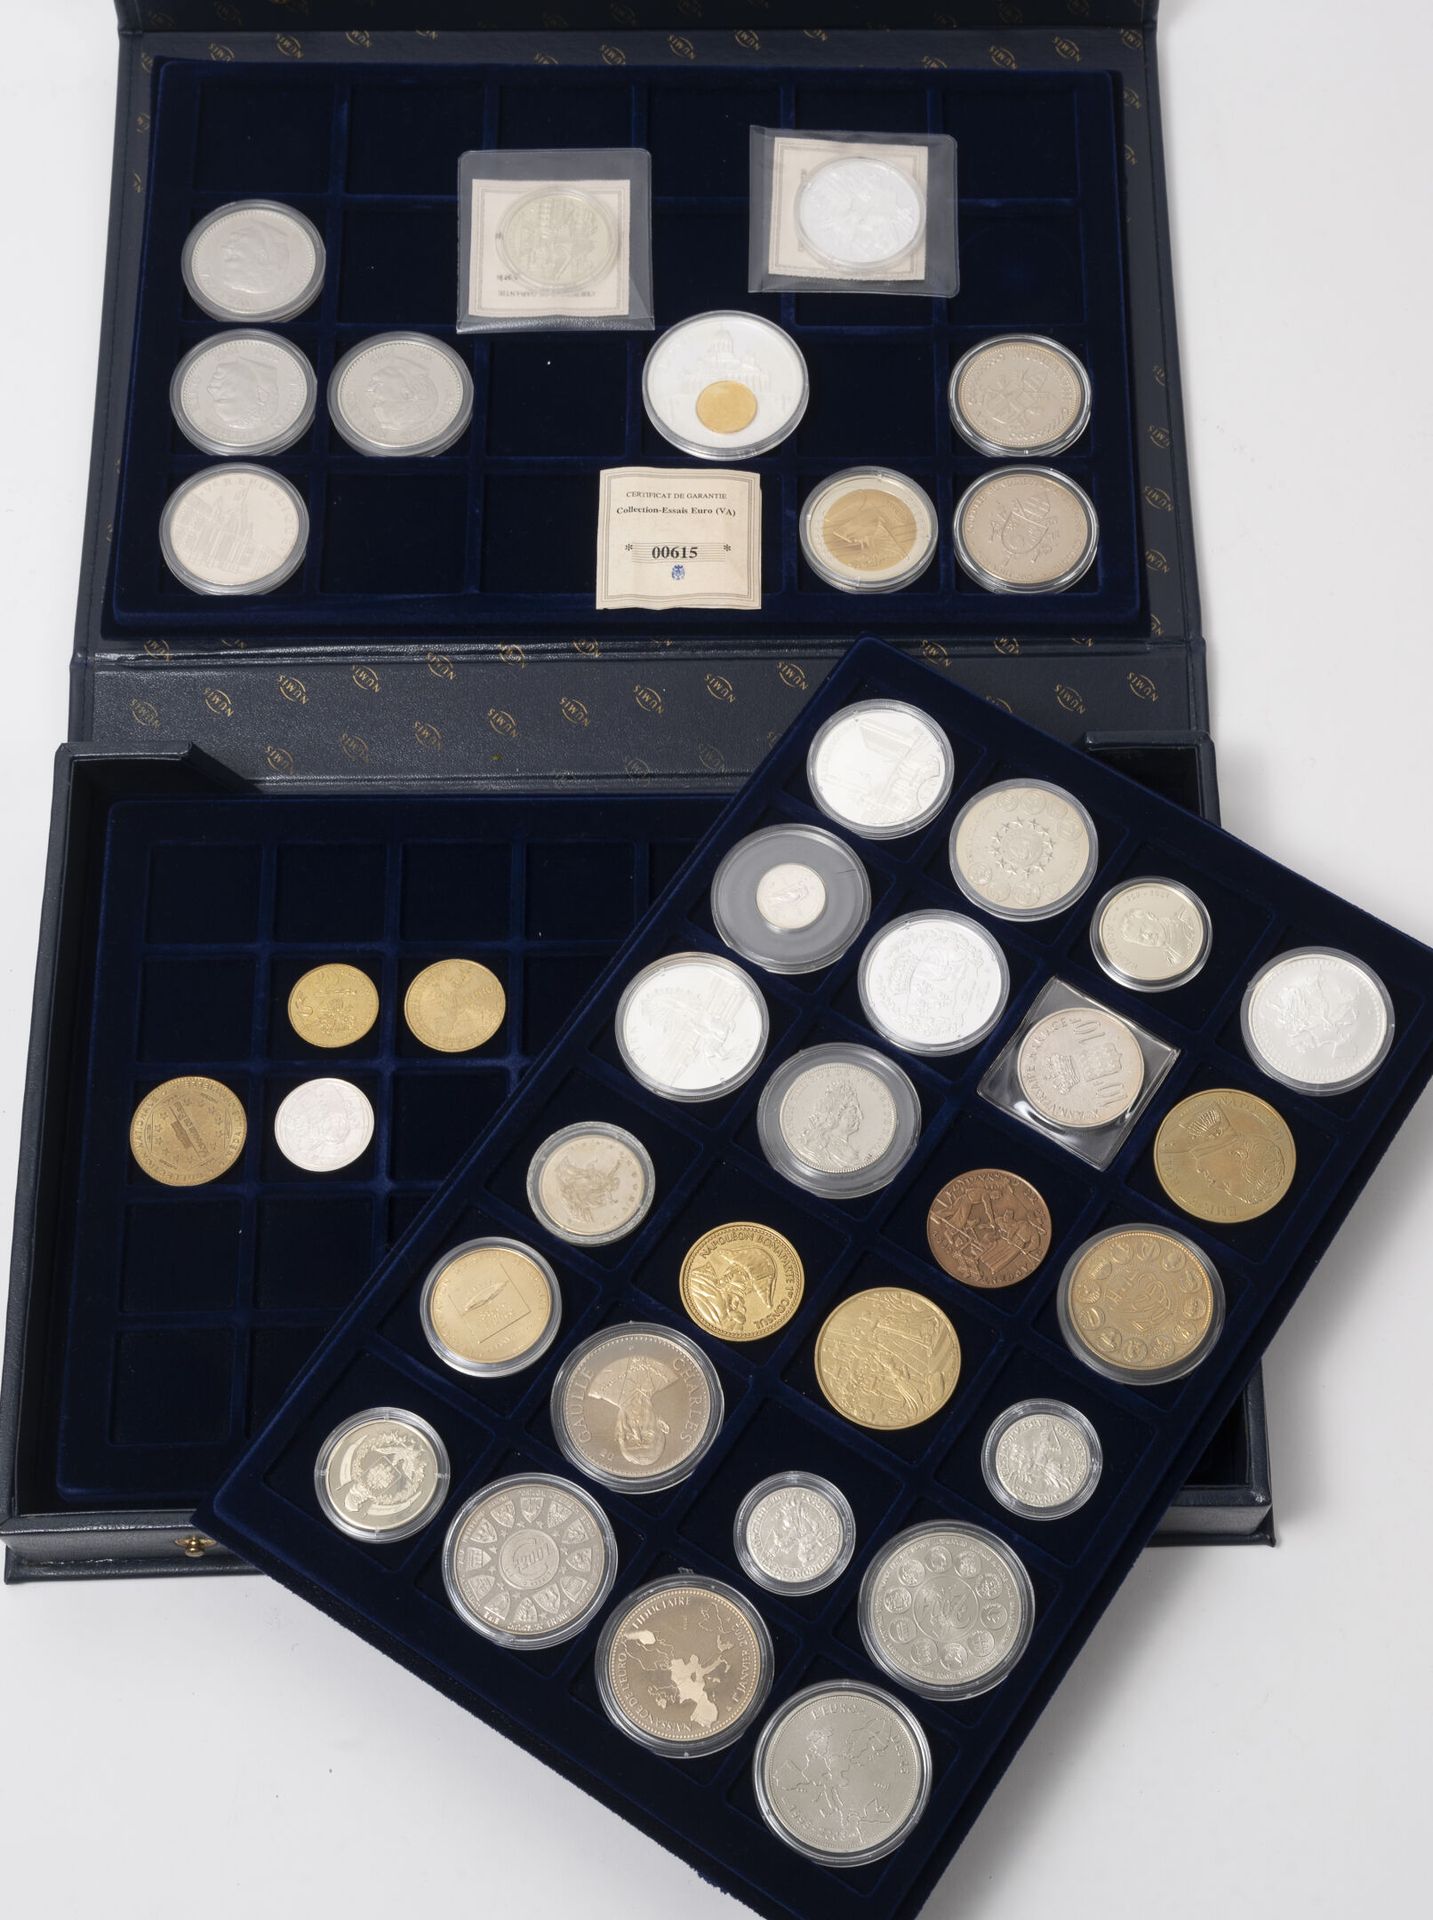 Null Lote de monedas y medallas que incluye:

-5 placas con 35 monedas cada una.&hellip;